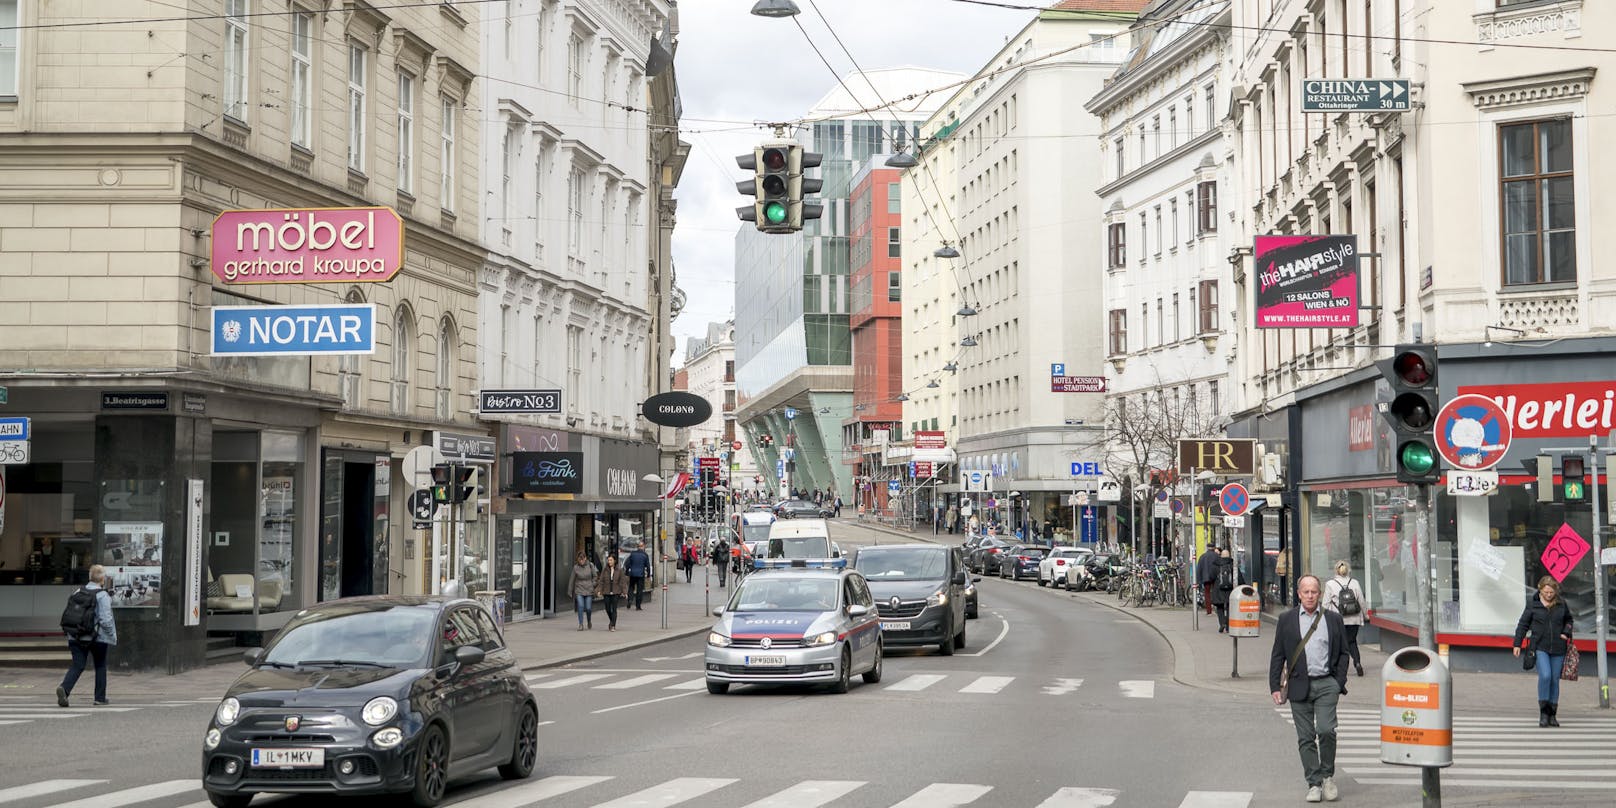 Tempo 30 auf der Landstraßer Hauptstraße war geplant, wurde aber verworfen.